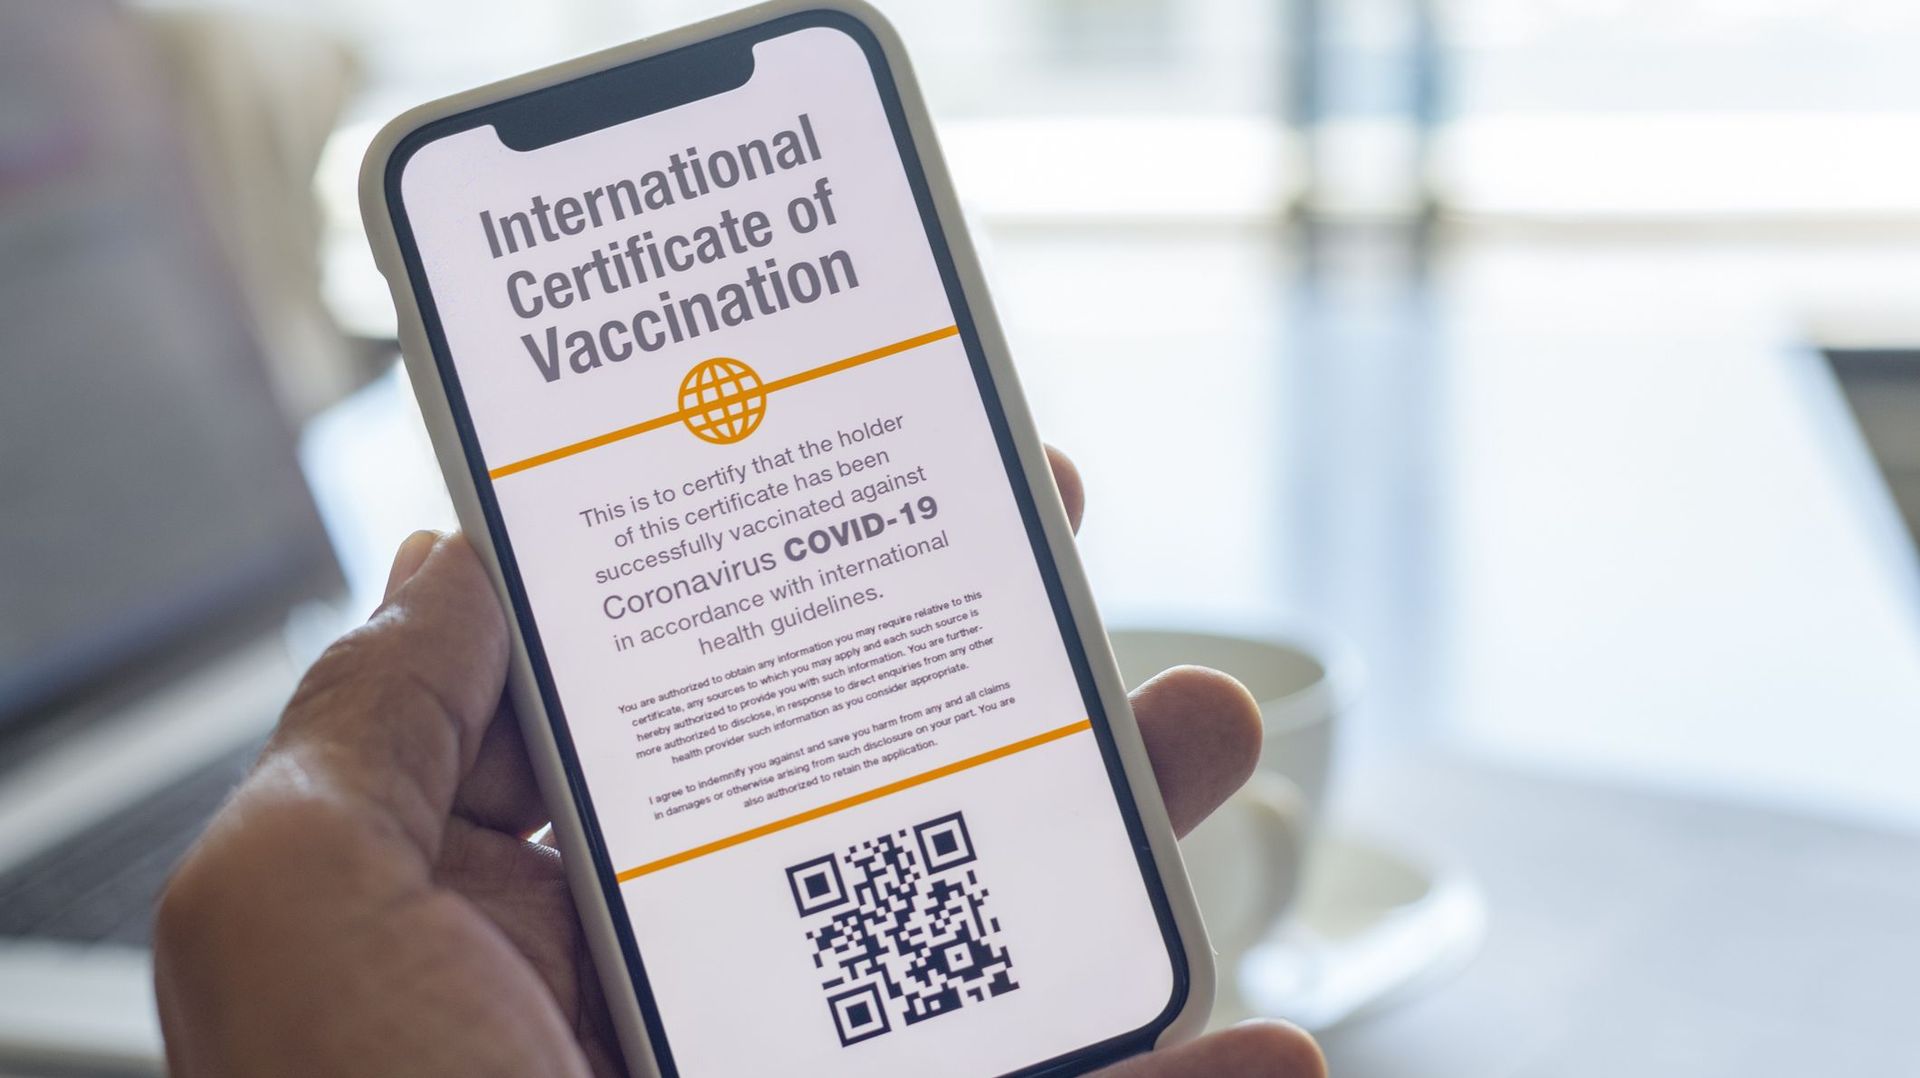 Image créative montrant un certificat numérique qui indique que le titulaire a été vacciné contre le Coronavirus / Covid-19.
